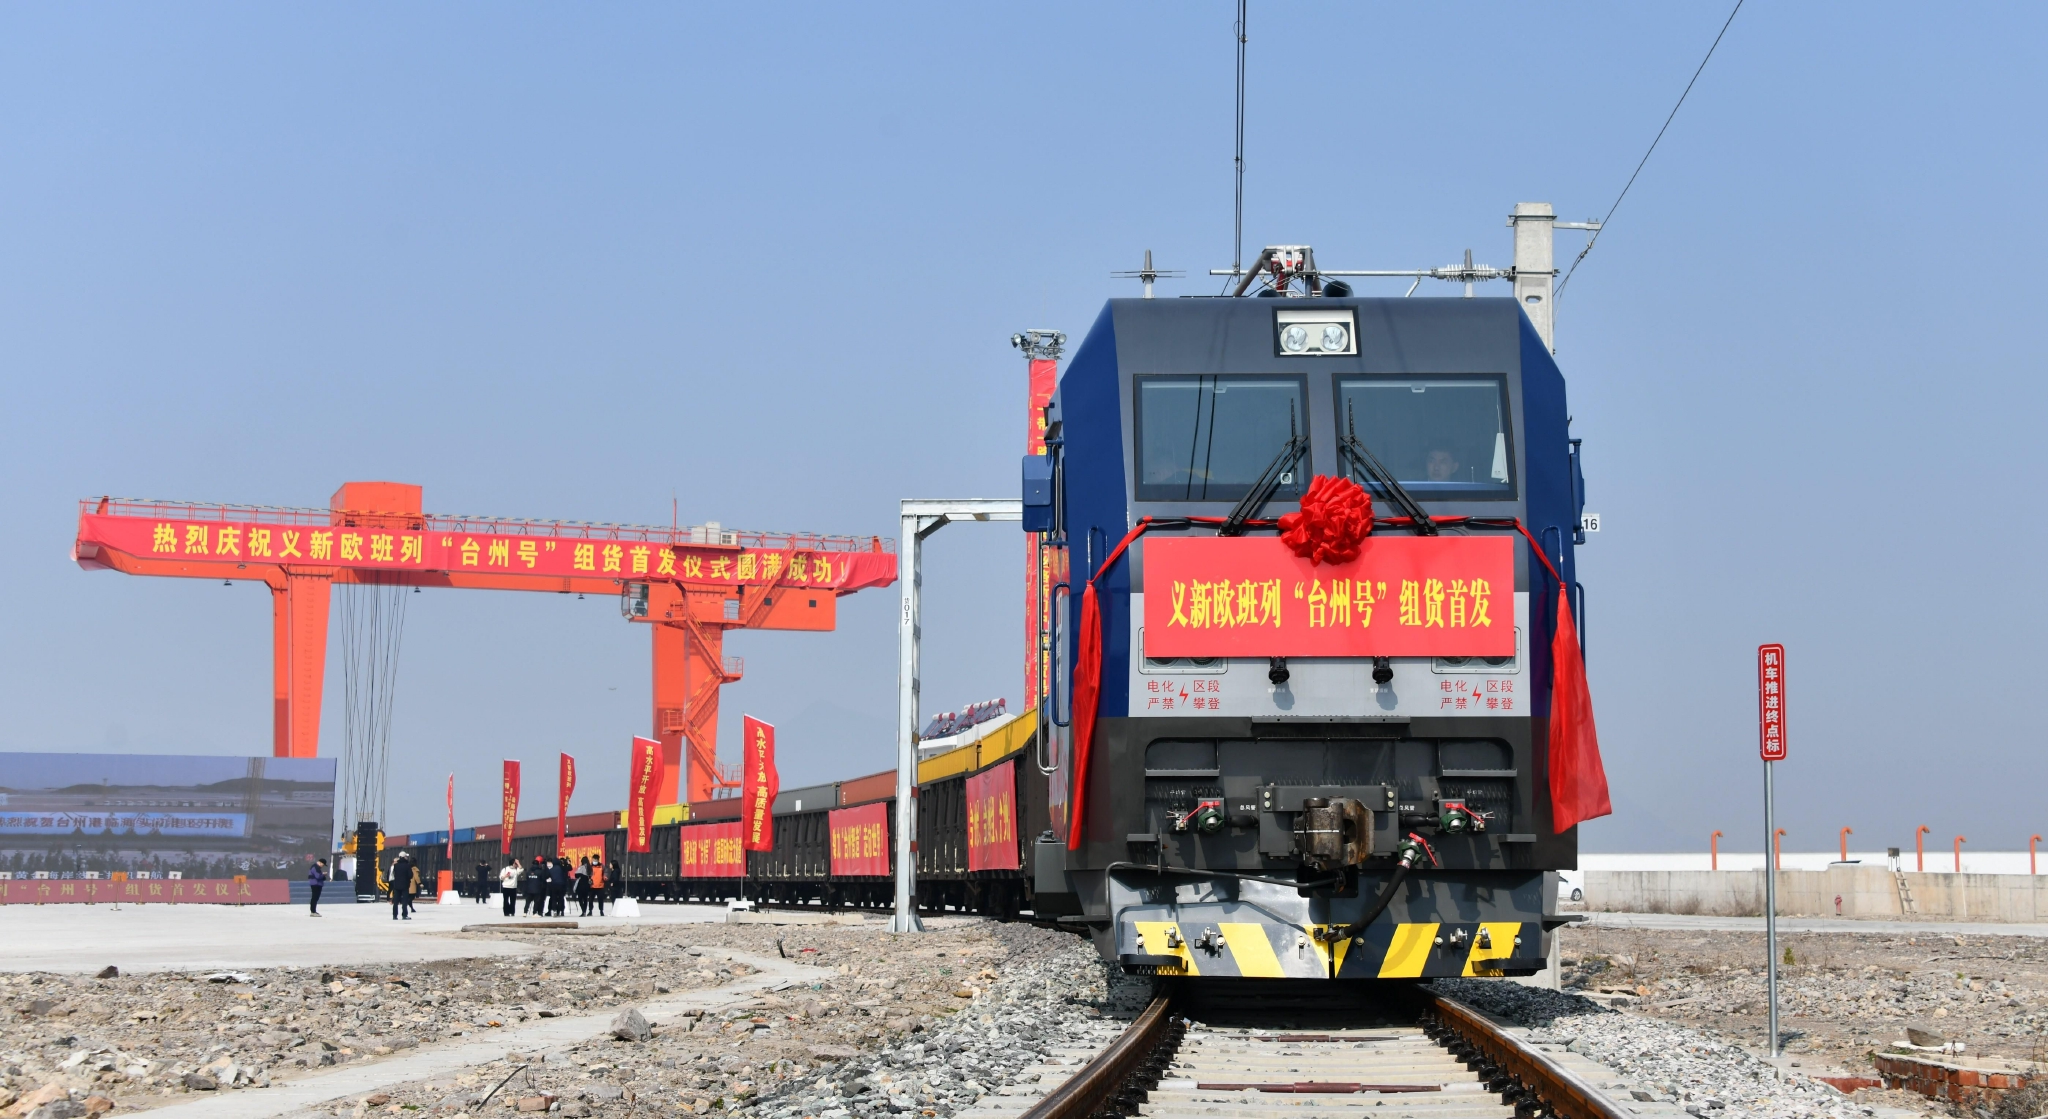 2月28日,义新欧中欧班列台州号在浙江省交通集团金台铁路头门港